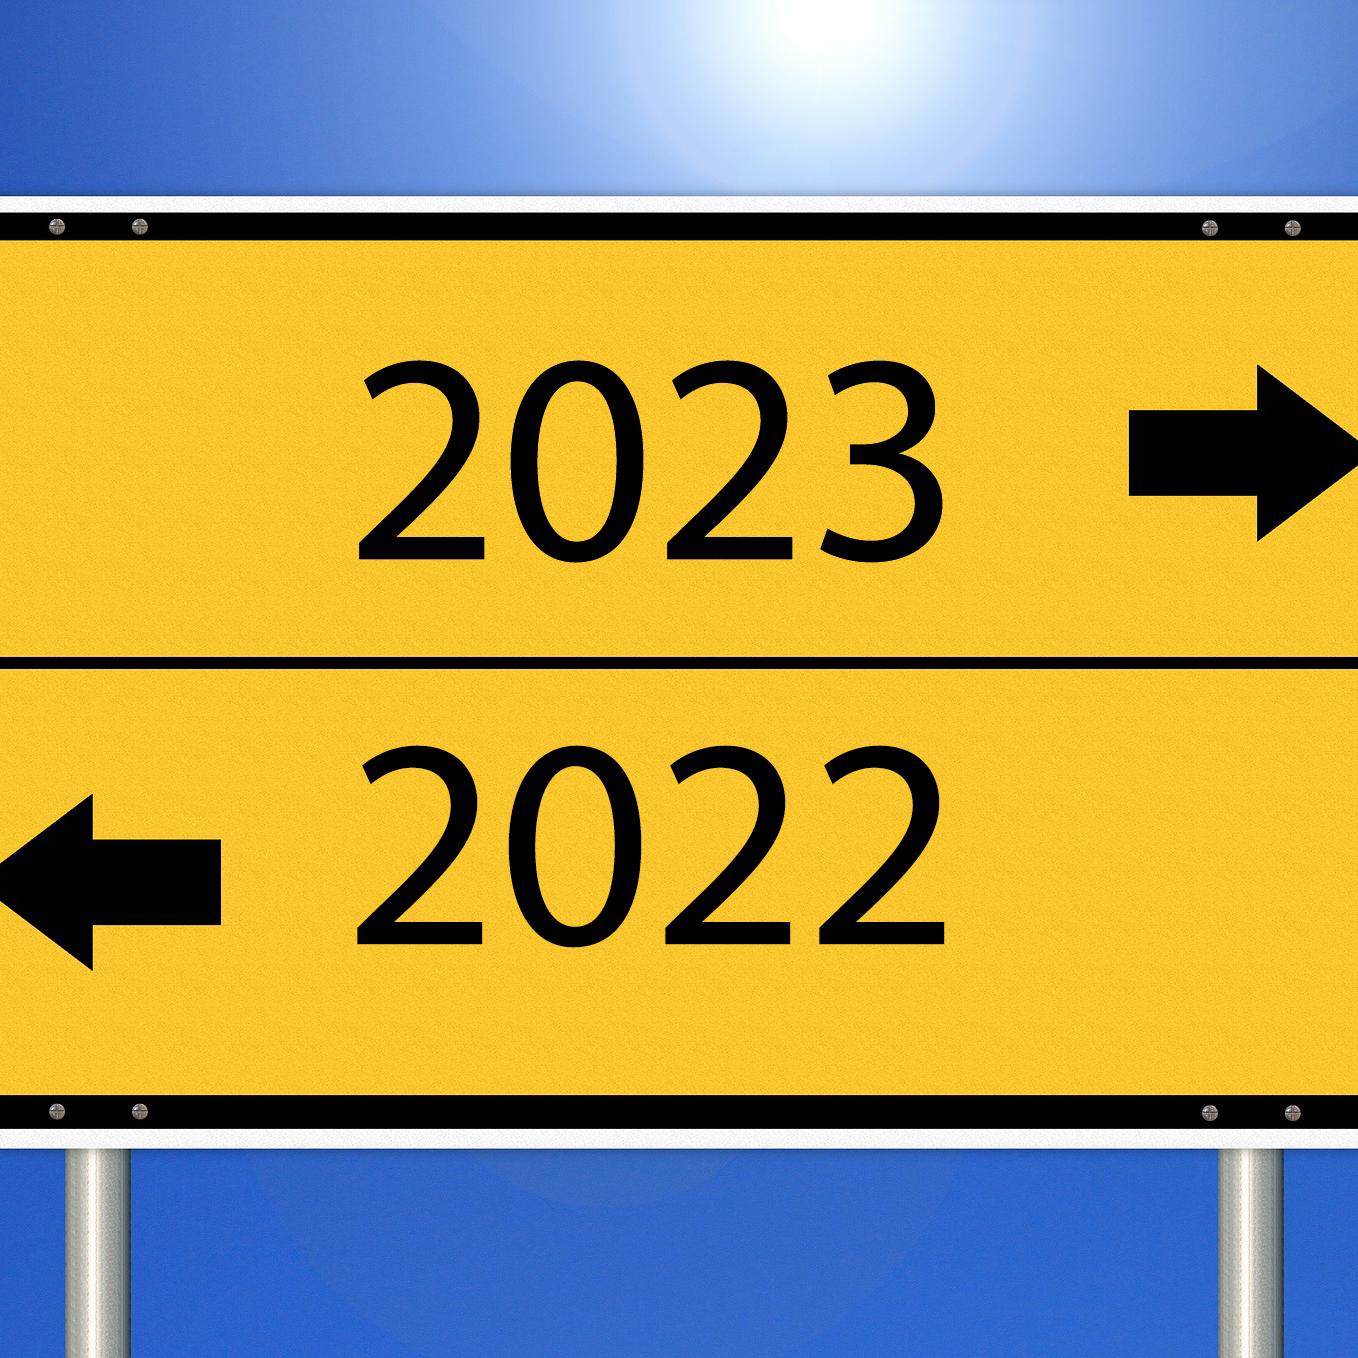 Jahresbeginn 2022: Das ändert sich in diesem Jahr für Autofahrer